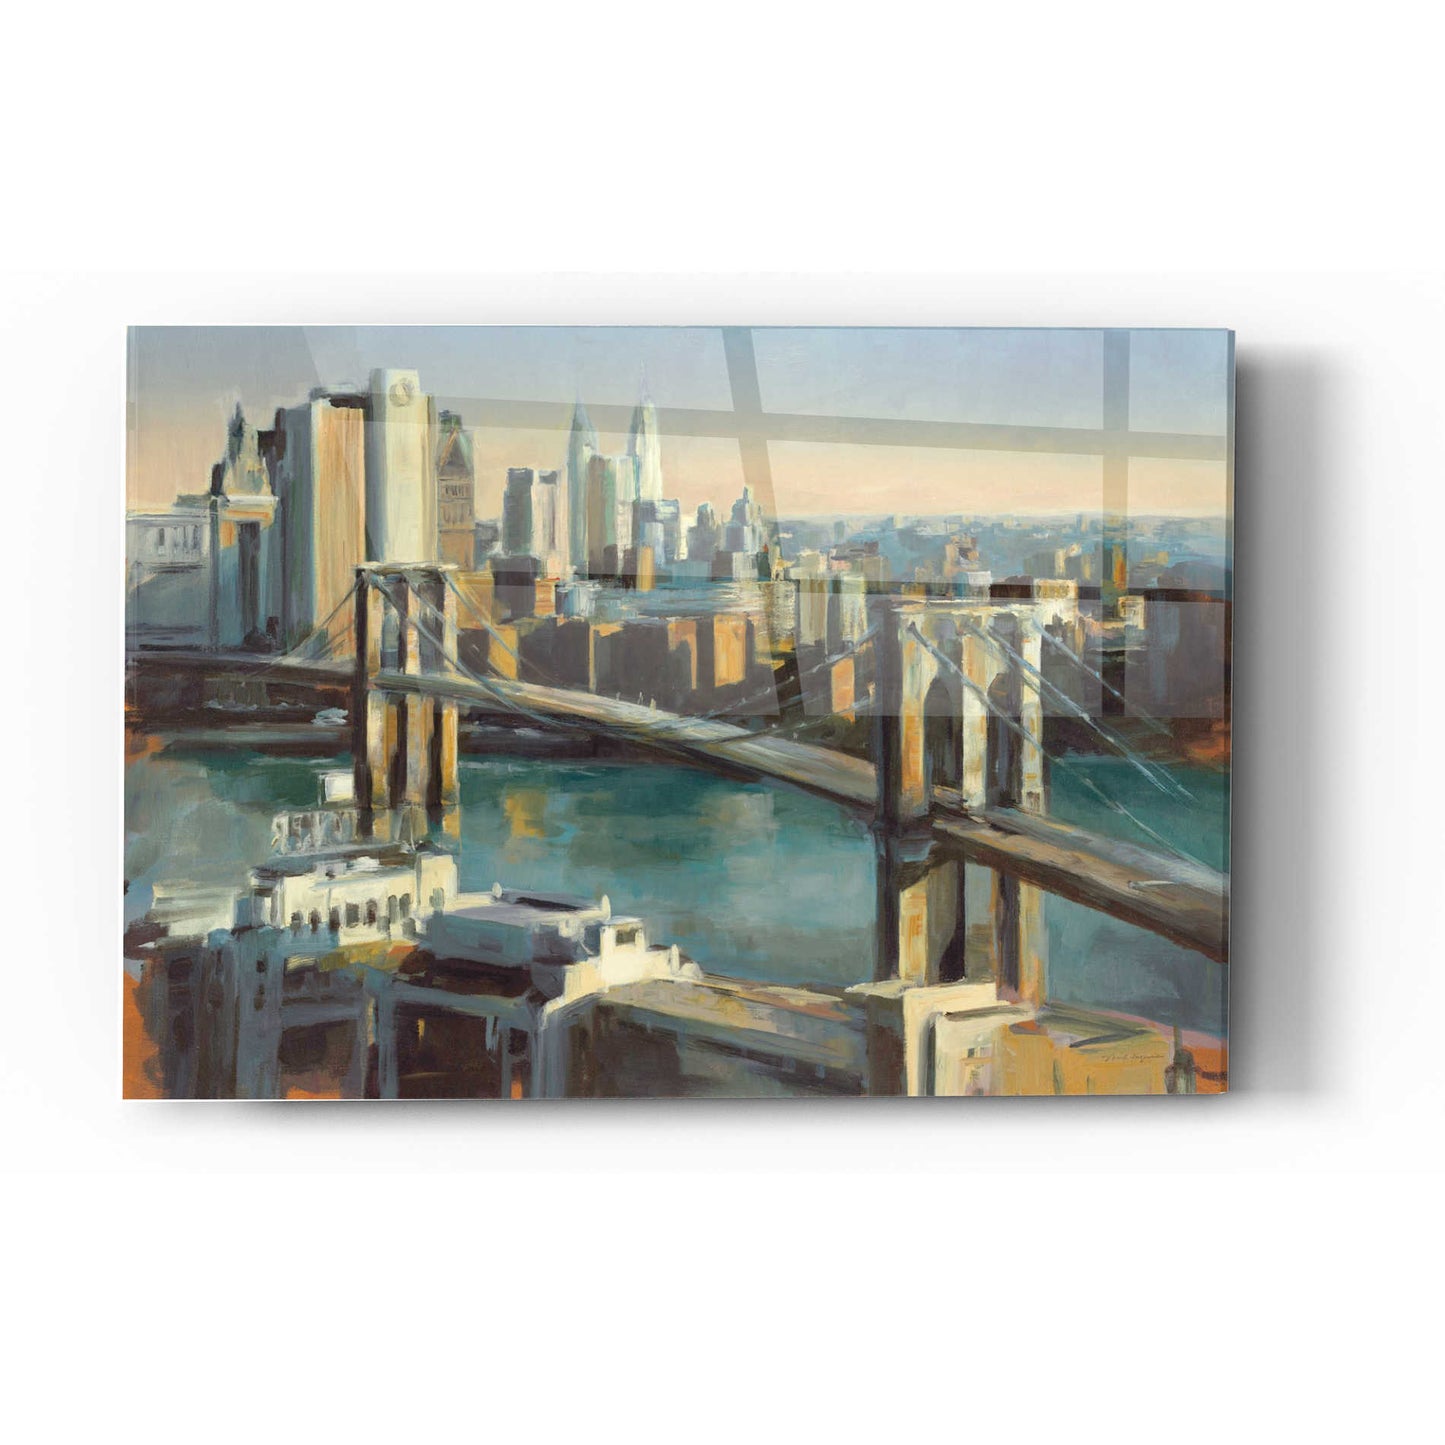 Epic Art 'Into Manhattan' by Marilyn Hageman, Acrylic Glass Wall Art,12x16